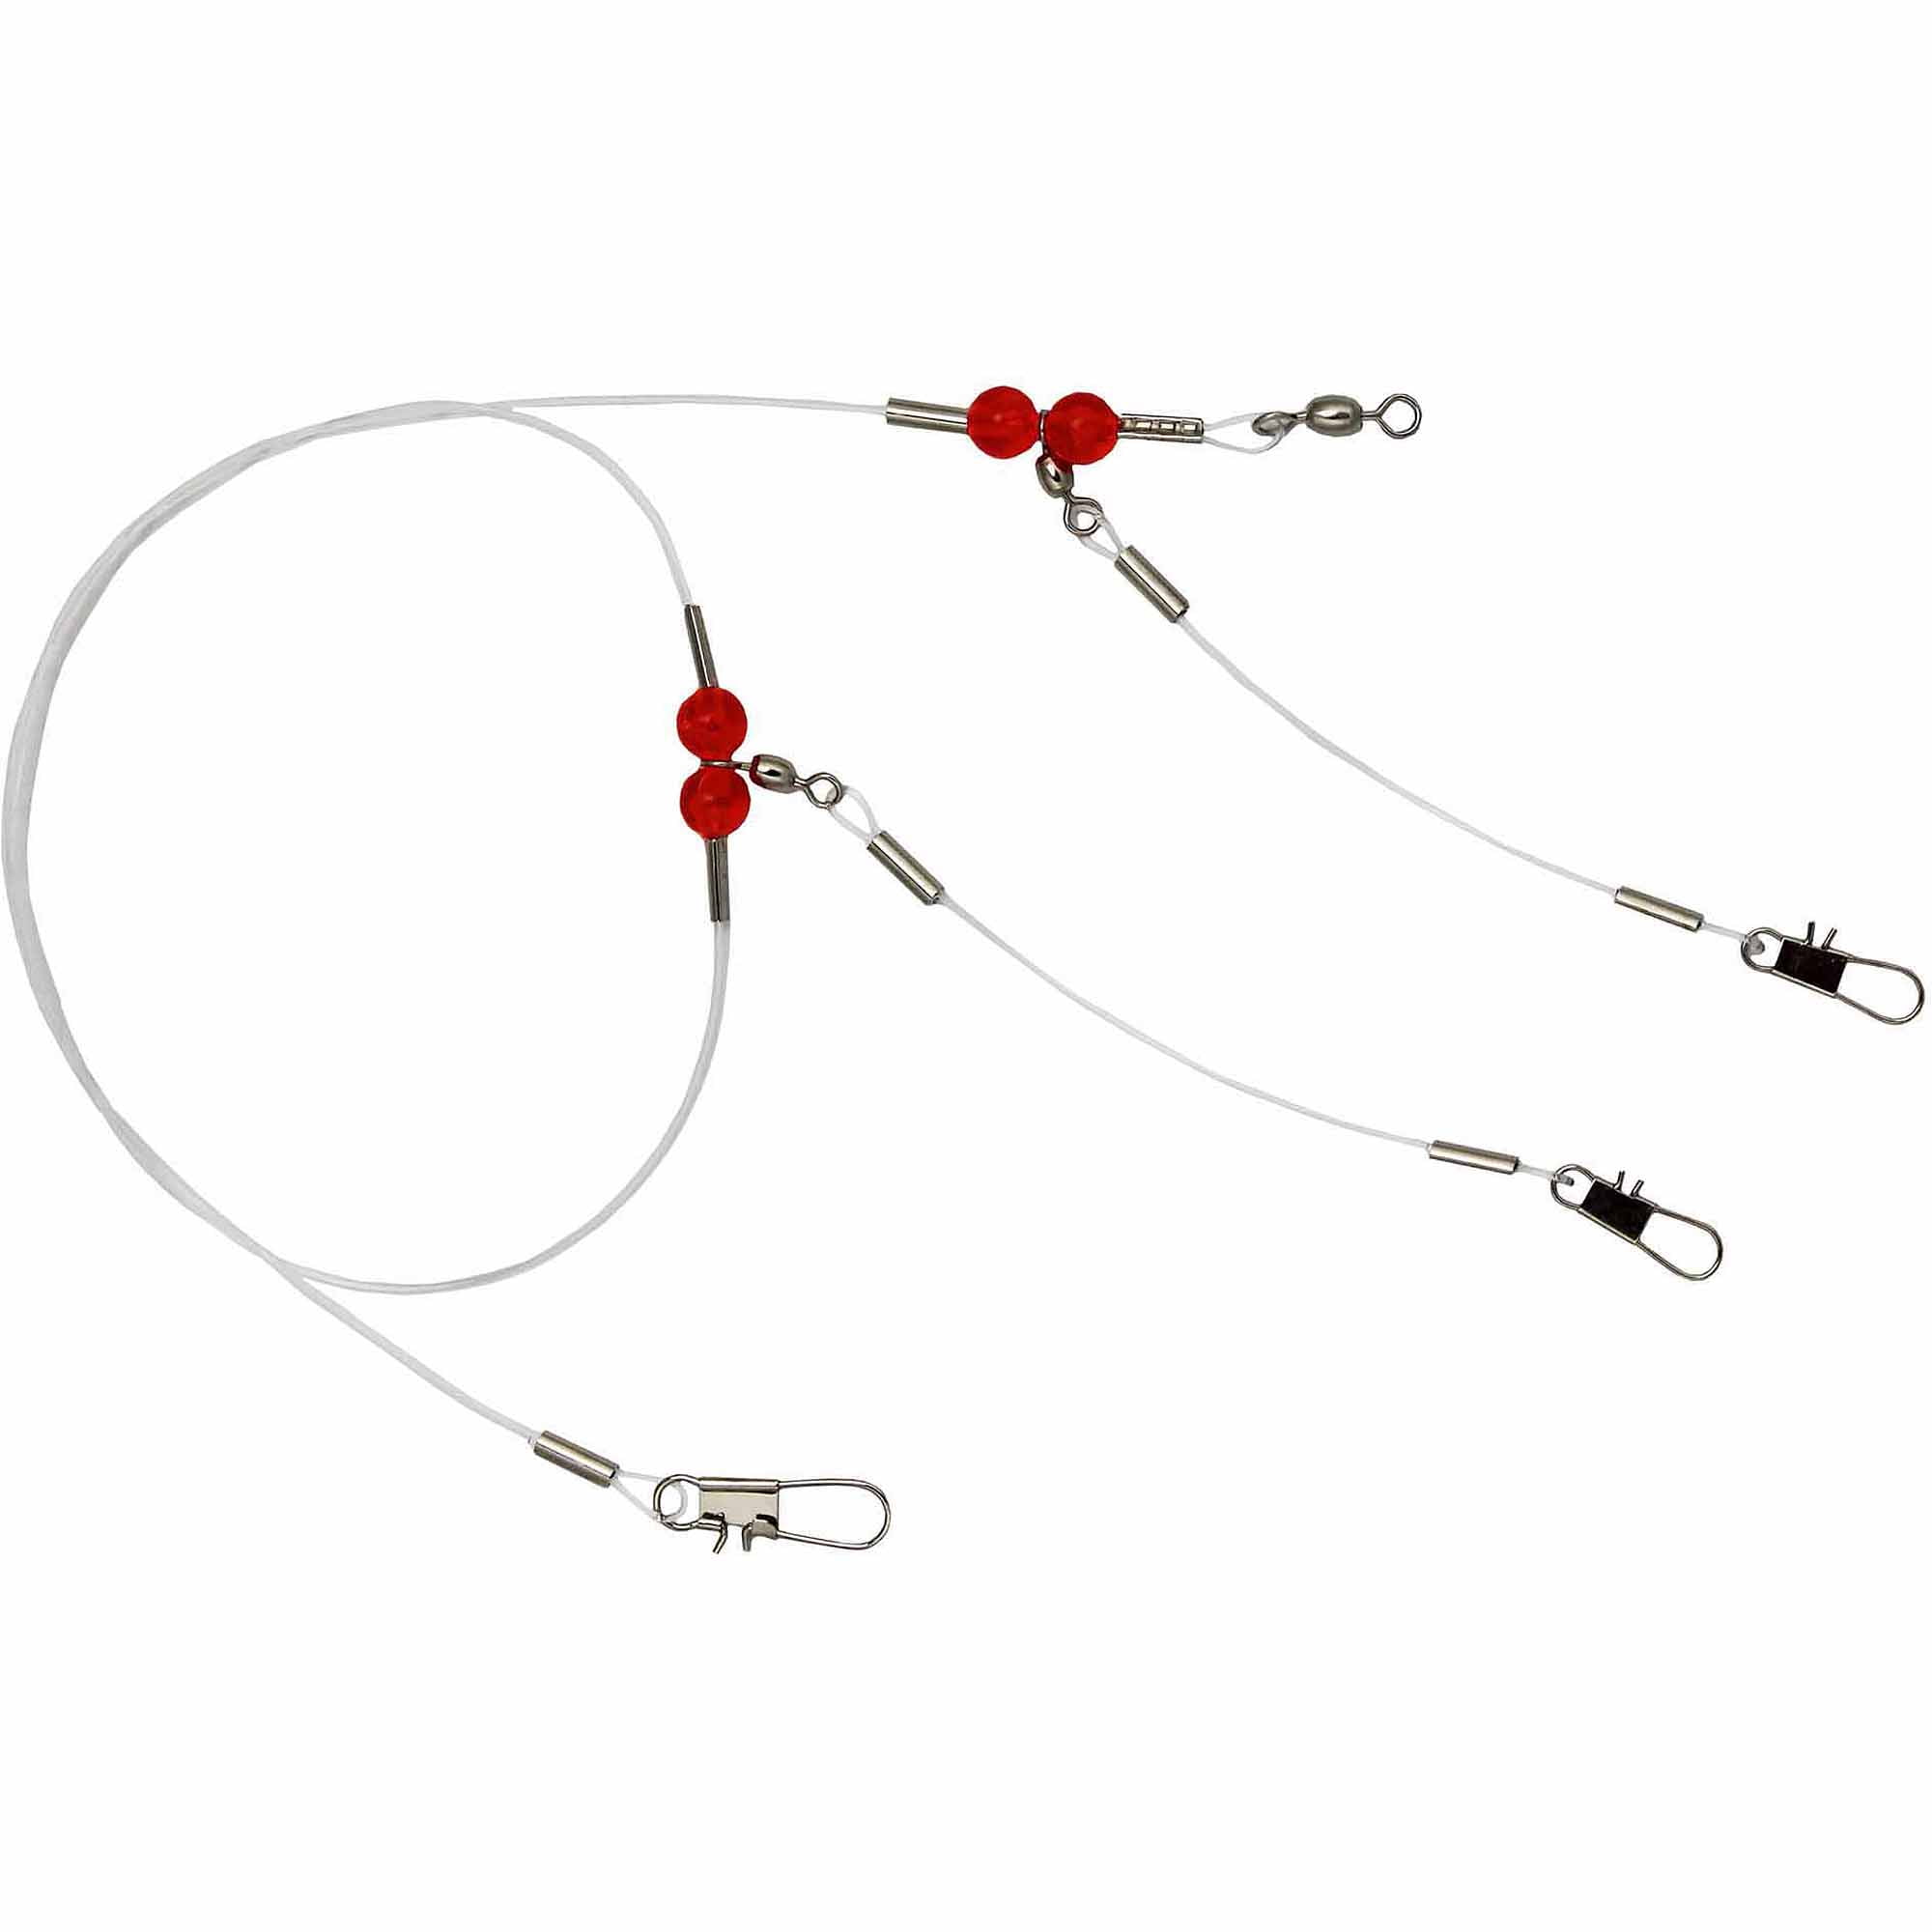 Ubersweet® Double Hook Fishing Rig, Fracture Resistant Large Hook